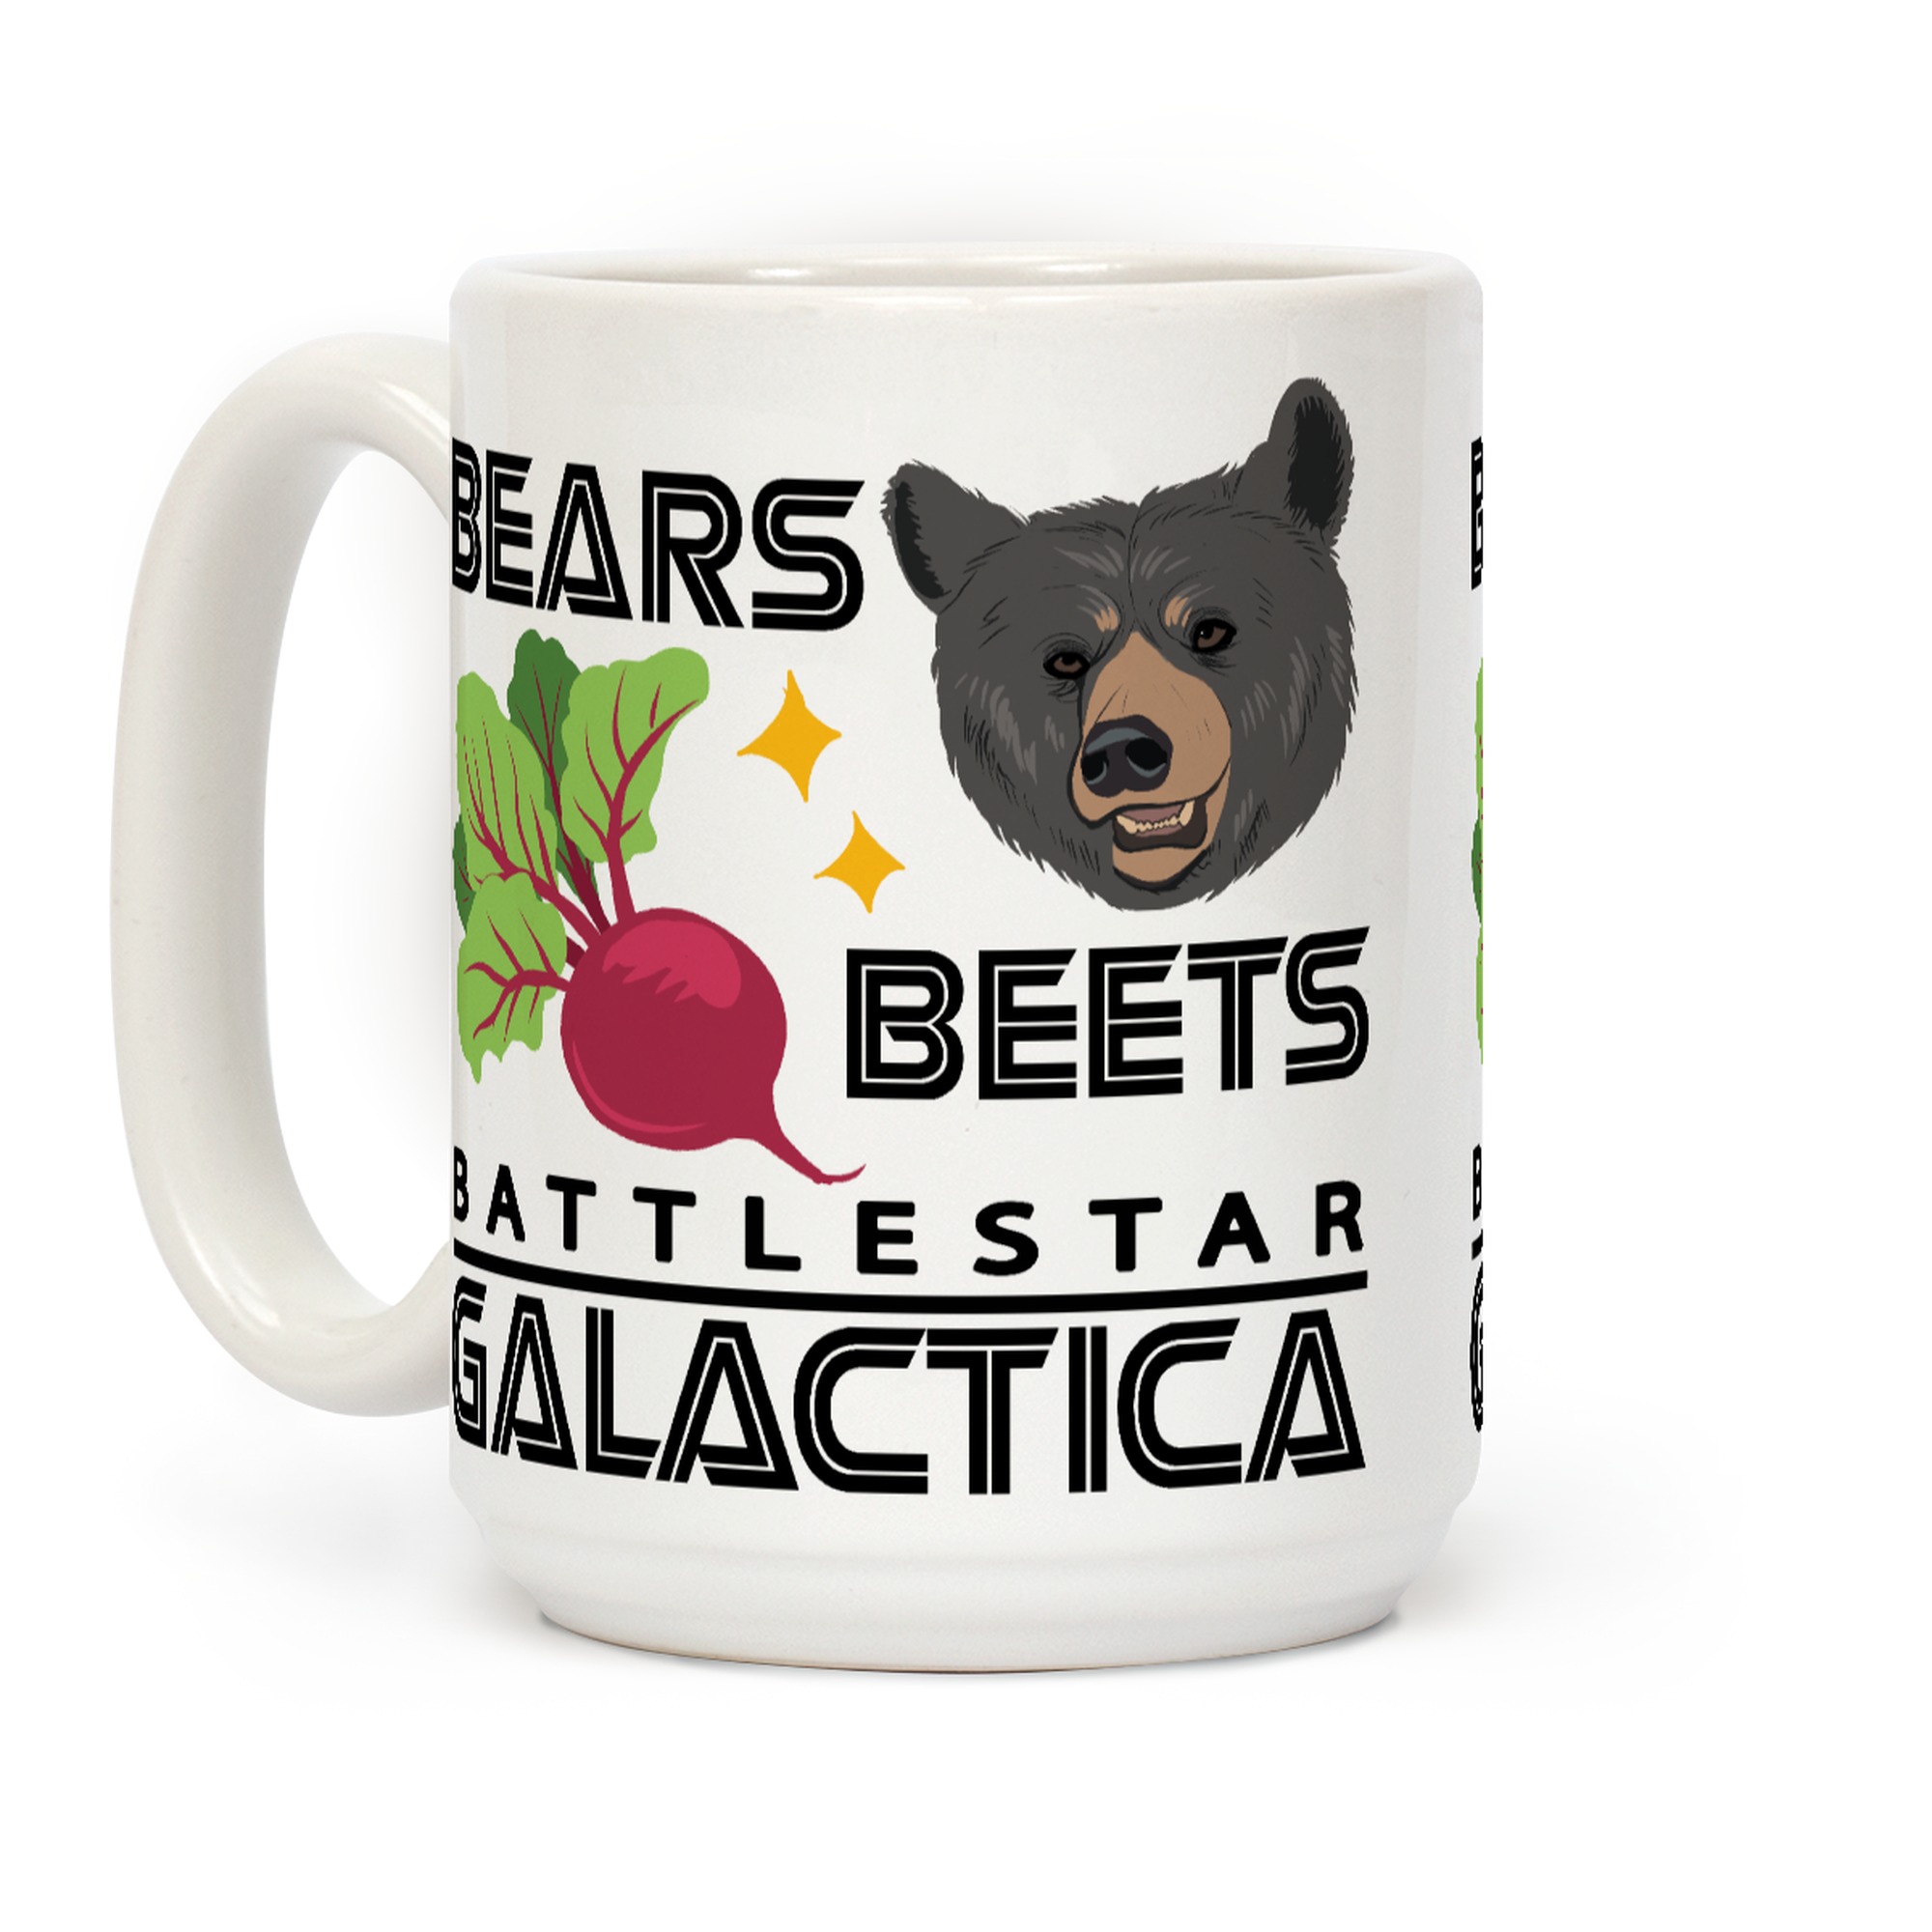 Funny Coffee Mug Bears Beets Battlestar Galactica Coffee Tea Cup TV Show Mug